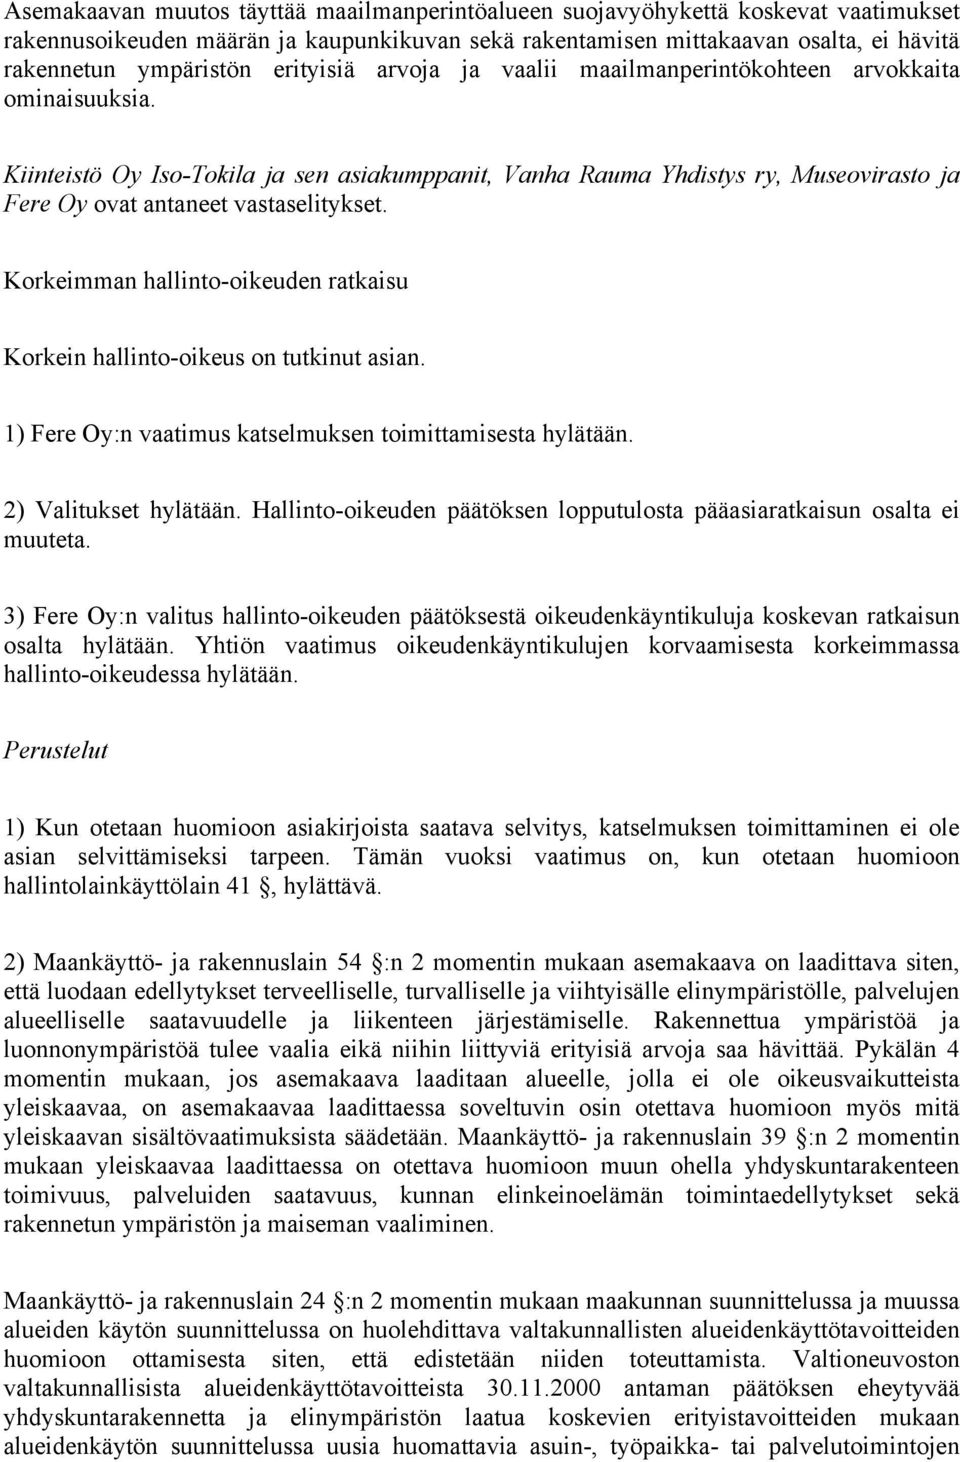 Kiinteistö Oy Iso-Tokila ja sen asiakumppanit, Vanha Rauma Yhdistys ry, Museovirasto ja Fere Oy ovat antaneet vastaselitykset.